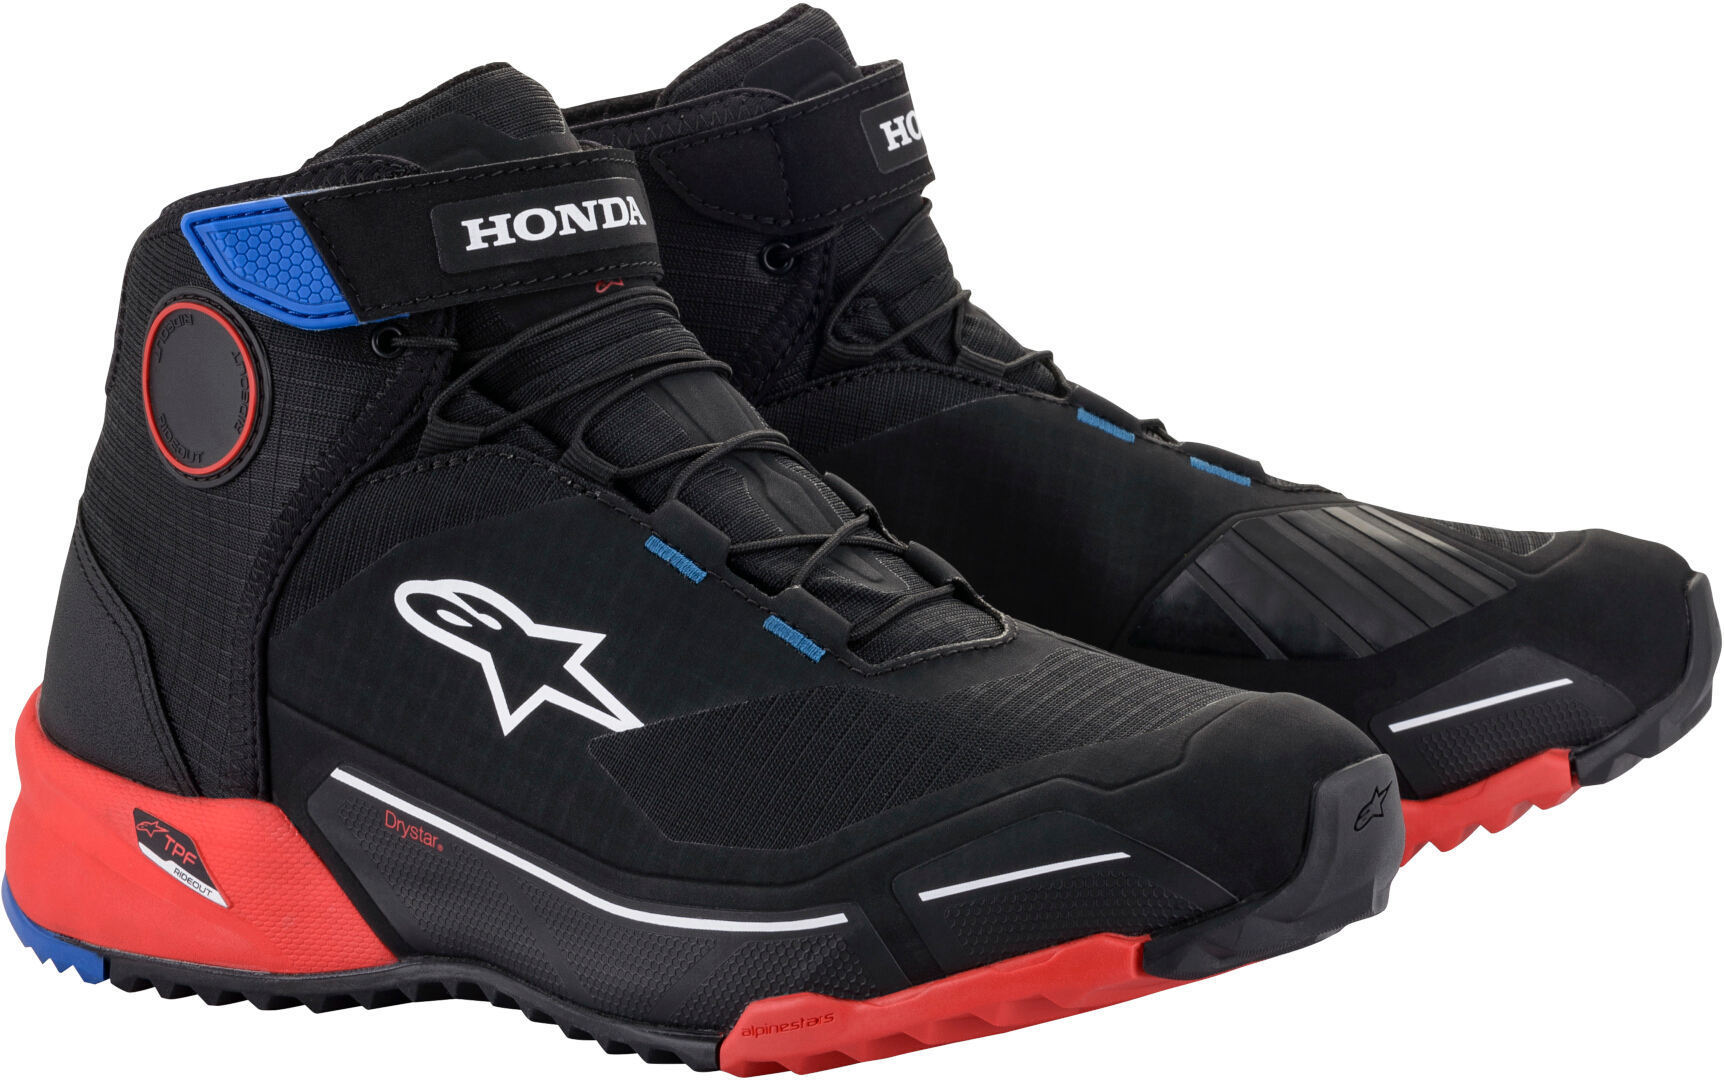 Мотоциклетные ботинки Alpinestars Honda CR-X Drystar, черный/красный/синий